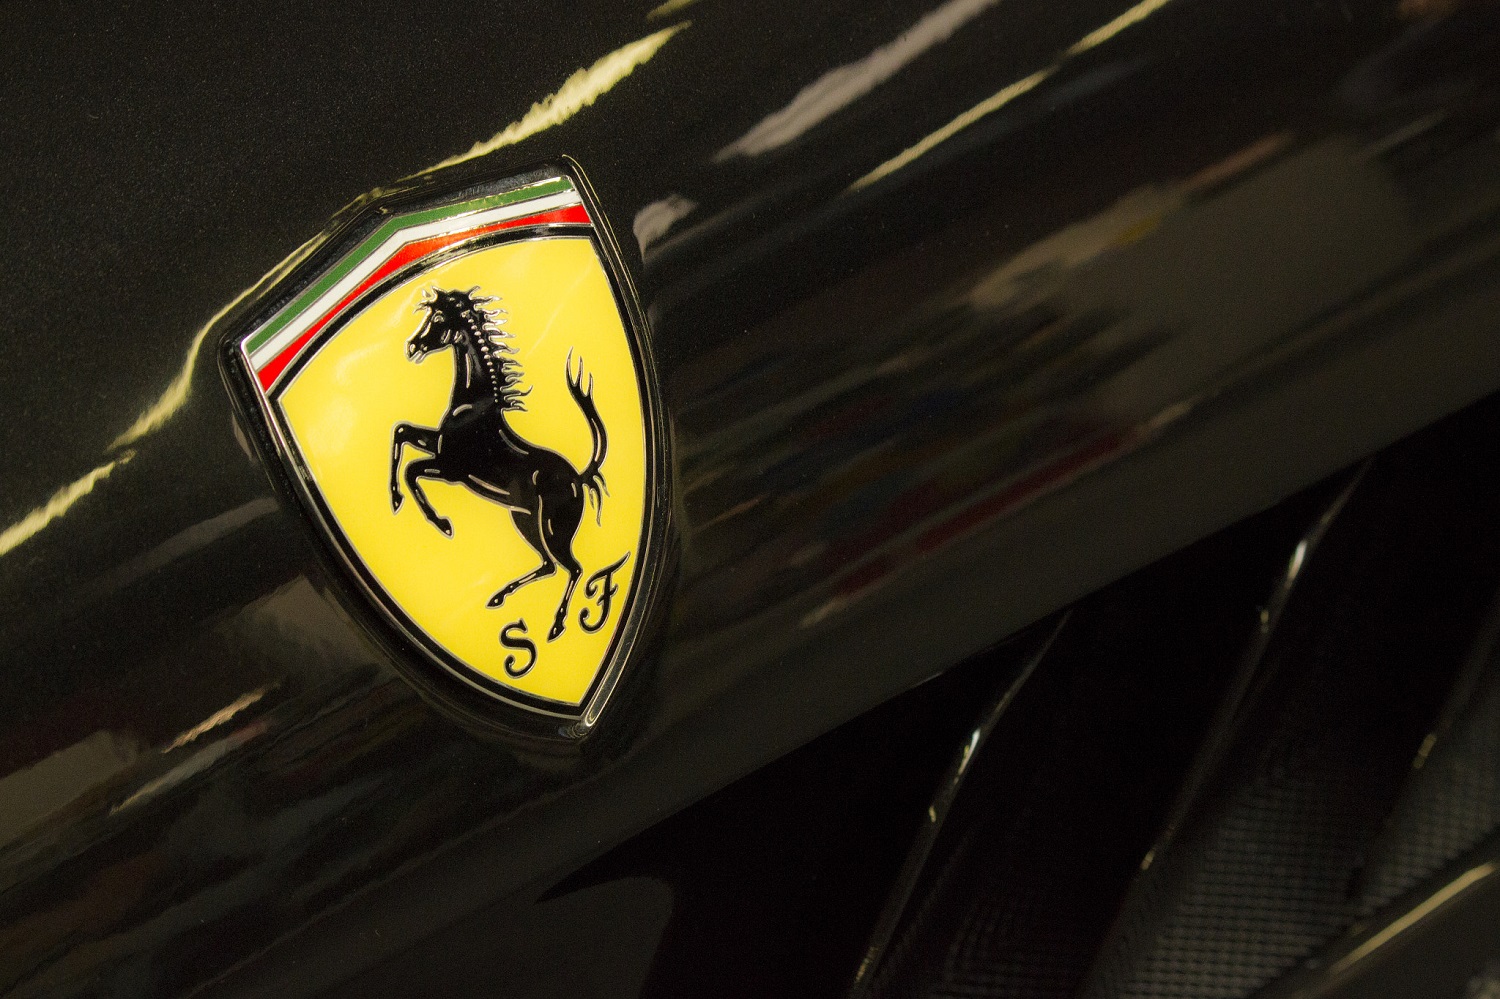 Ferrari promises 'even more unique' electric cars